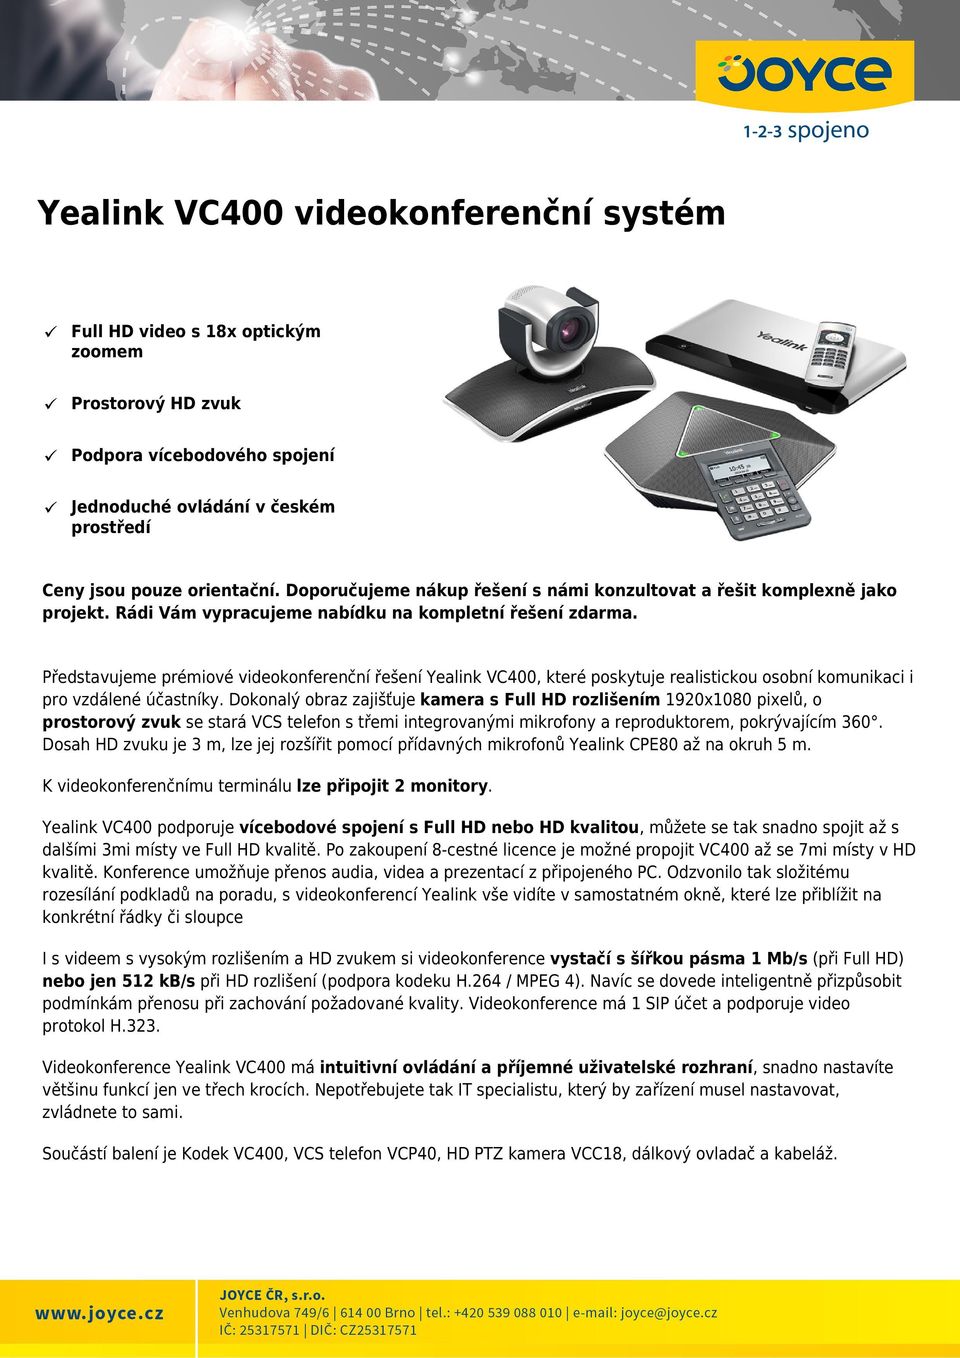 Představujeme prémiové videokonferenční řešení Yealink VC400, které poskytuje realistickou osobní komunikaci i pro vzdálené účastníky.